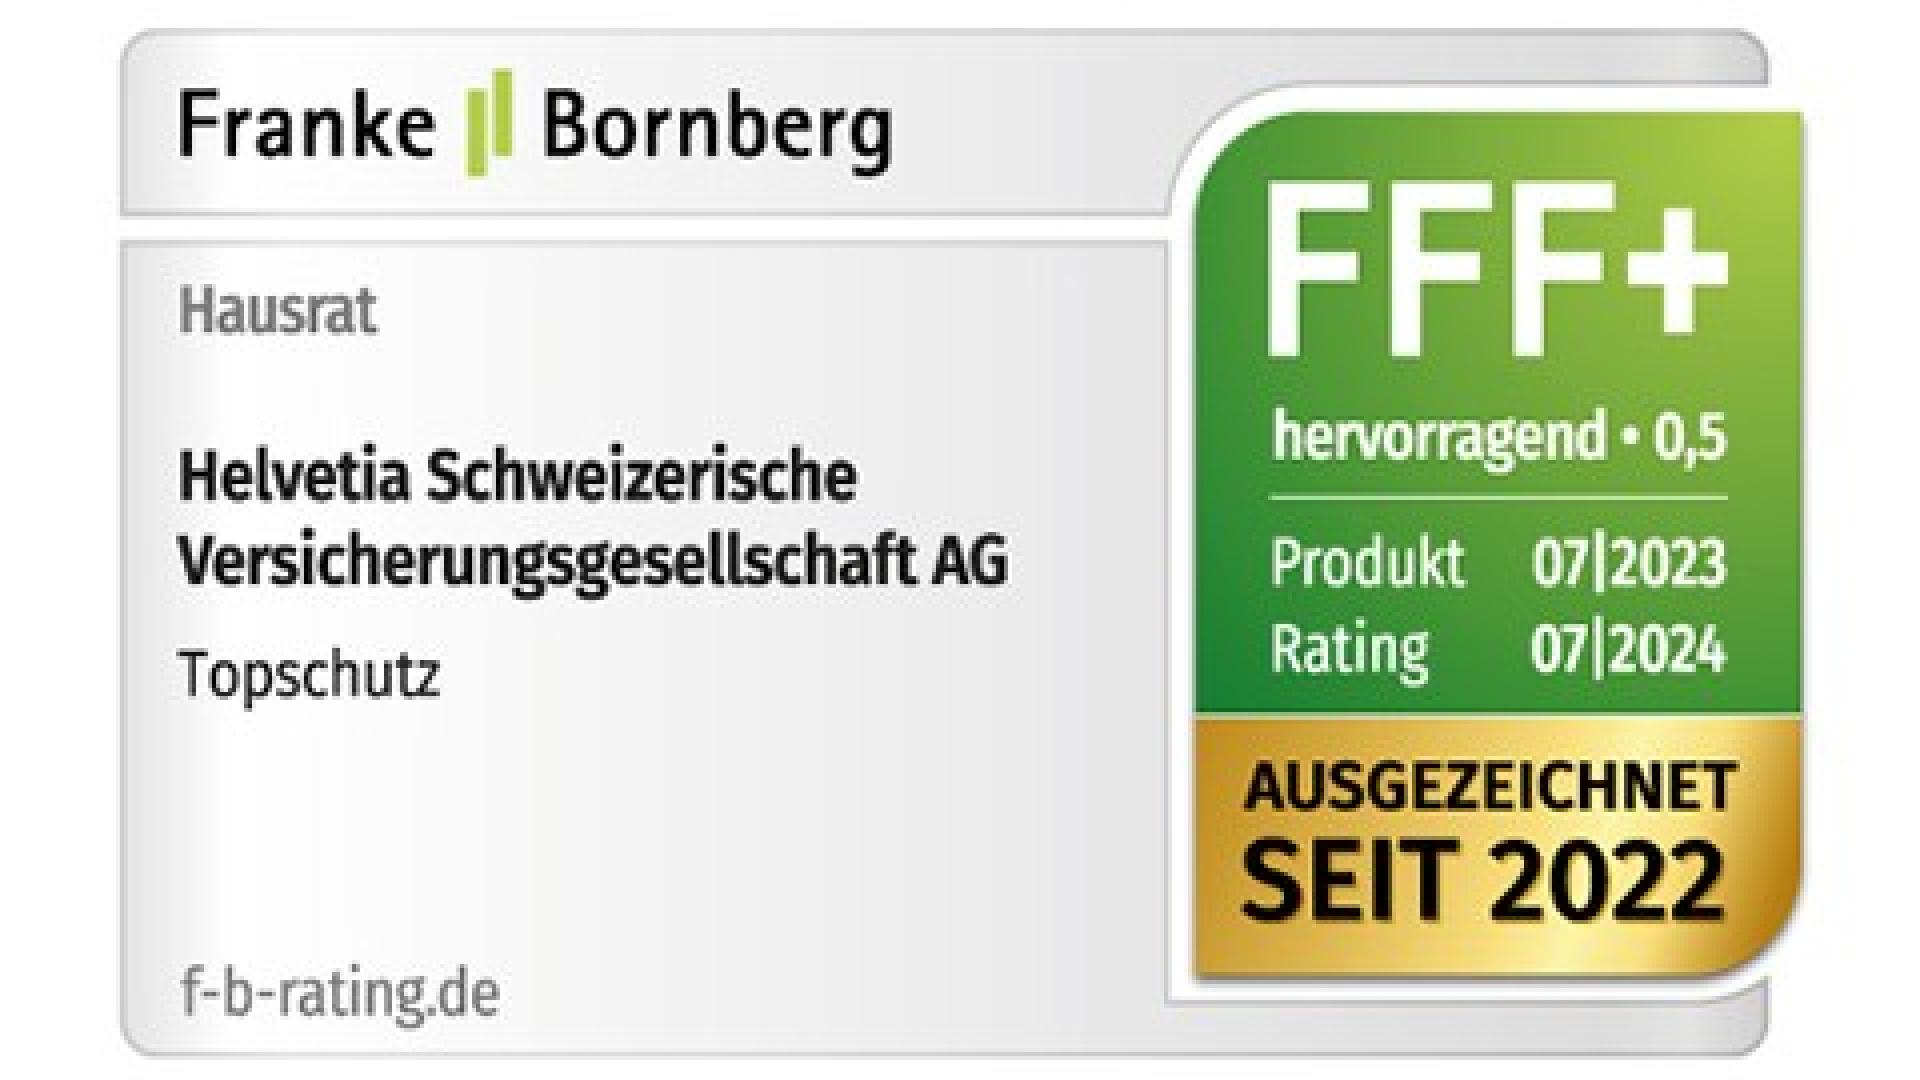 Franke und Bornberg bewerten den Topschutz der Hausratversicherung mit dem Leistungsniveau »hervorragend« (07/23)